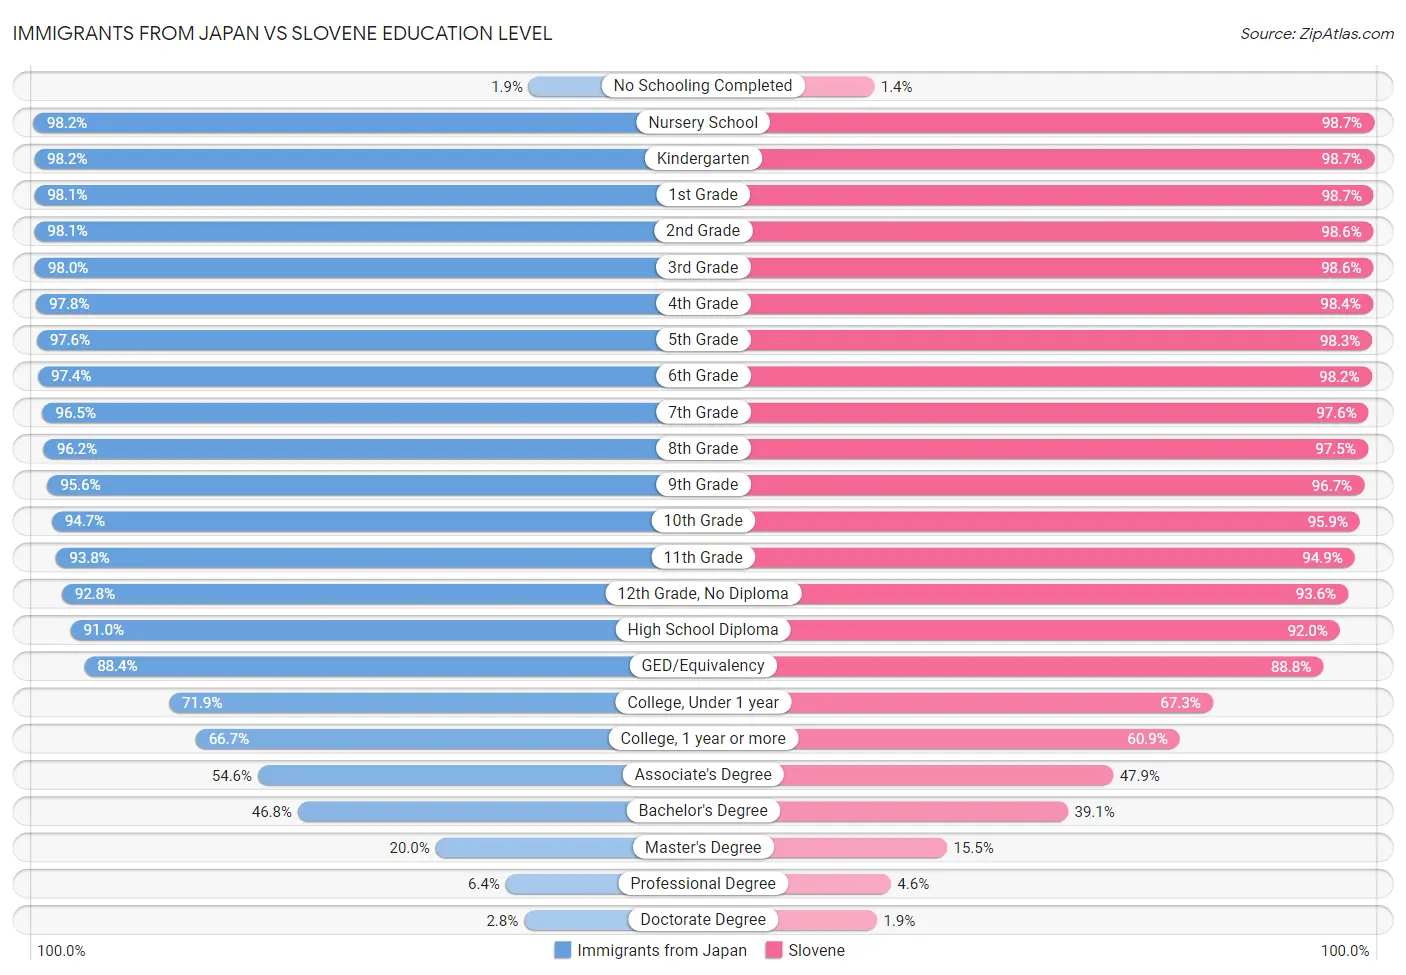 Immigrants from Japan vs Slovene Education Level